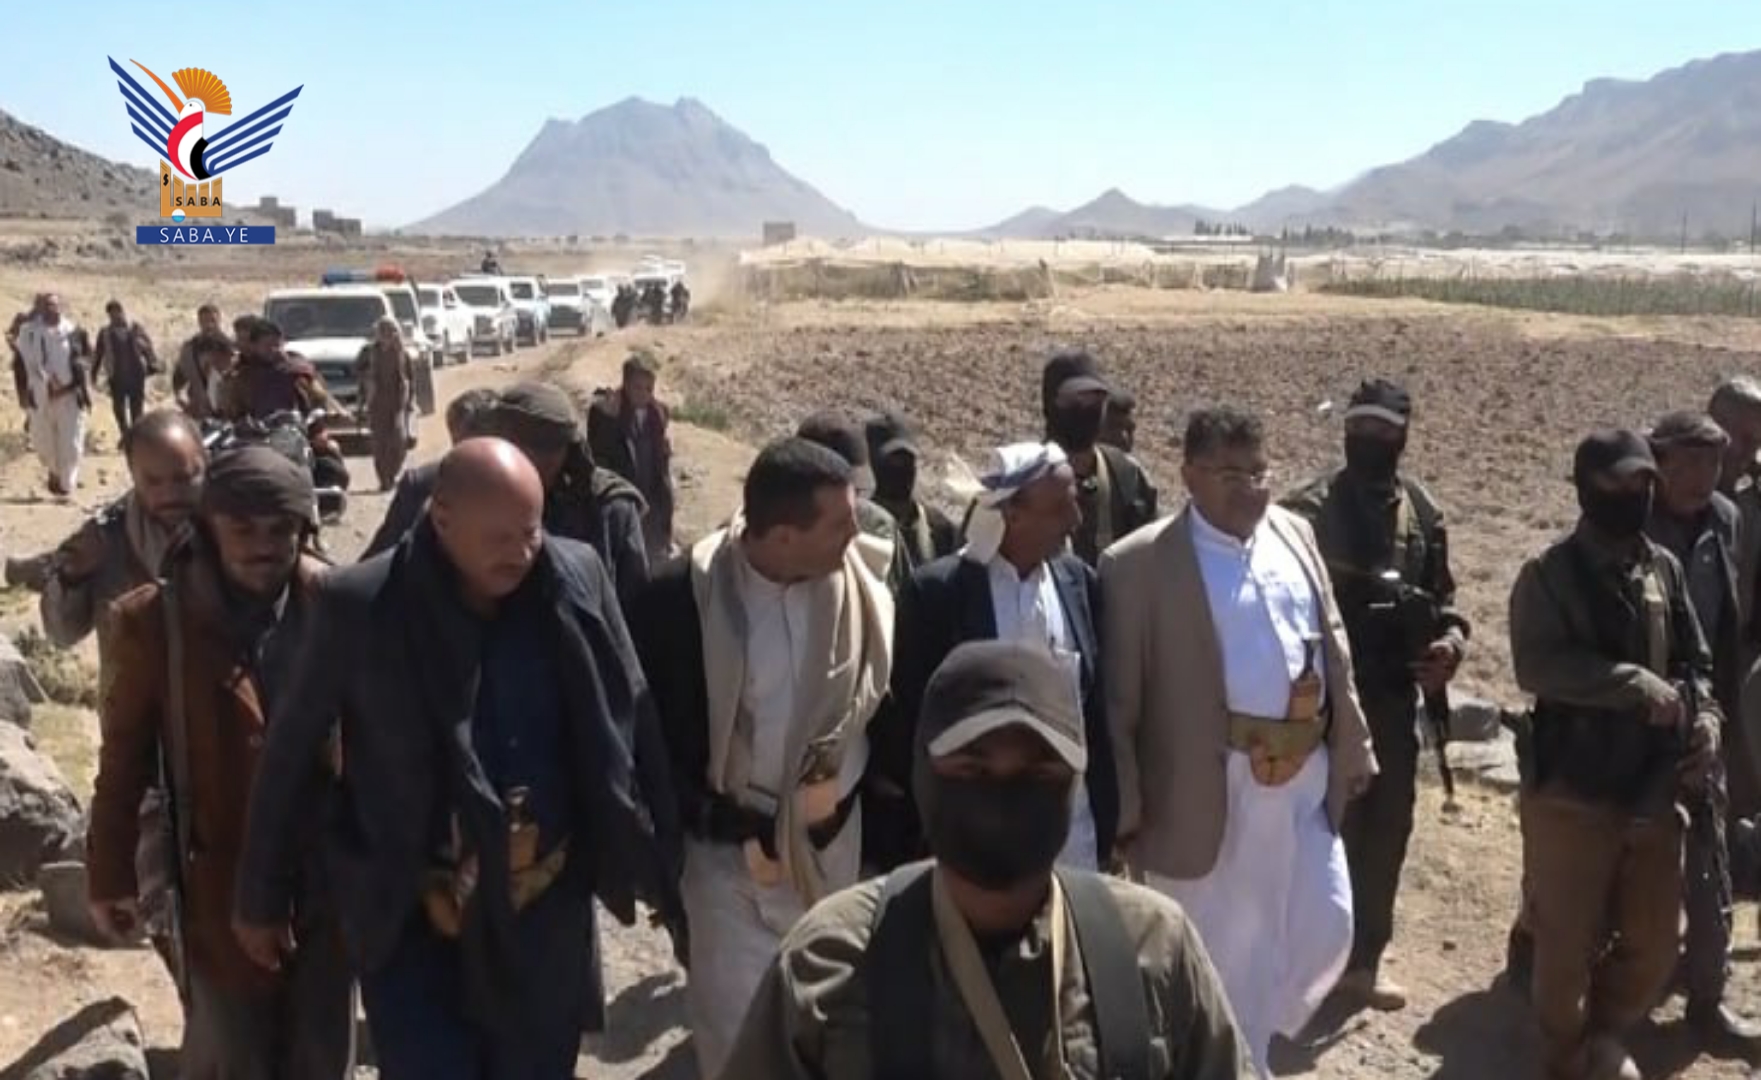 Mohammad Ali Al-Houthi betreut den Abschluss von 3 Mordfällen in Dhamar